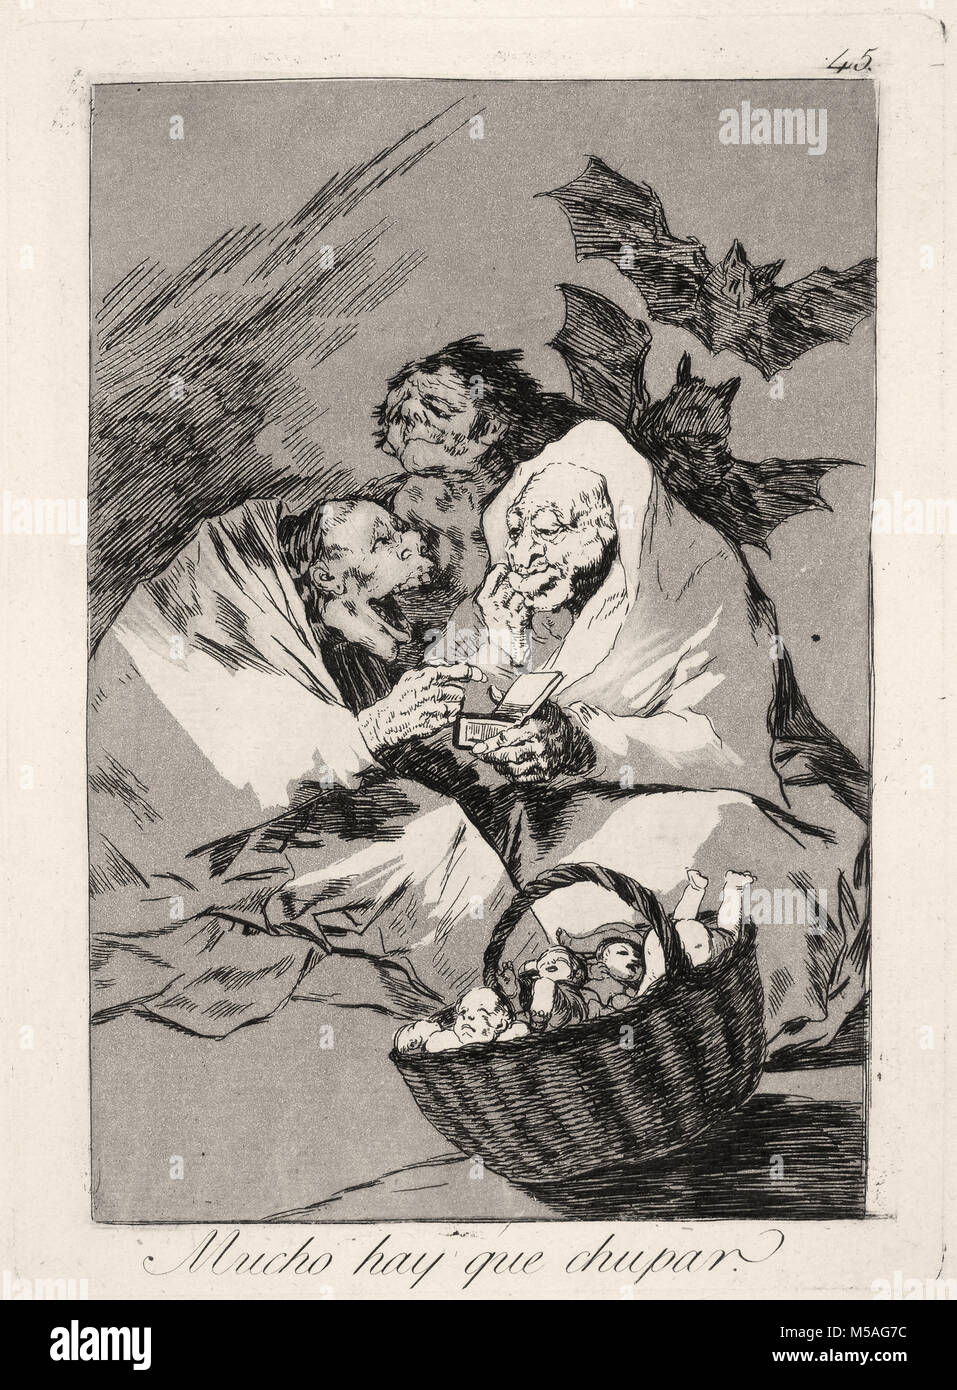 Francisco de Goya - Los Caprichos - No. 45 - Mucho hay que chupar Stock Photo